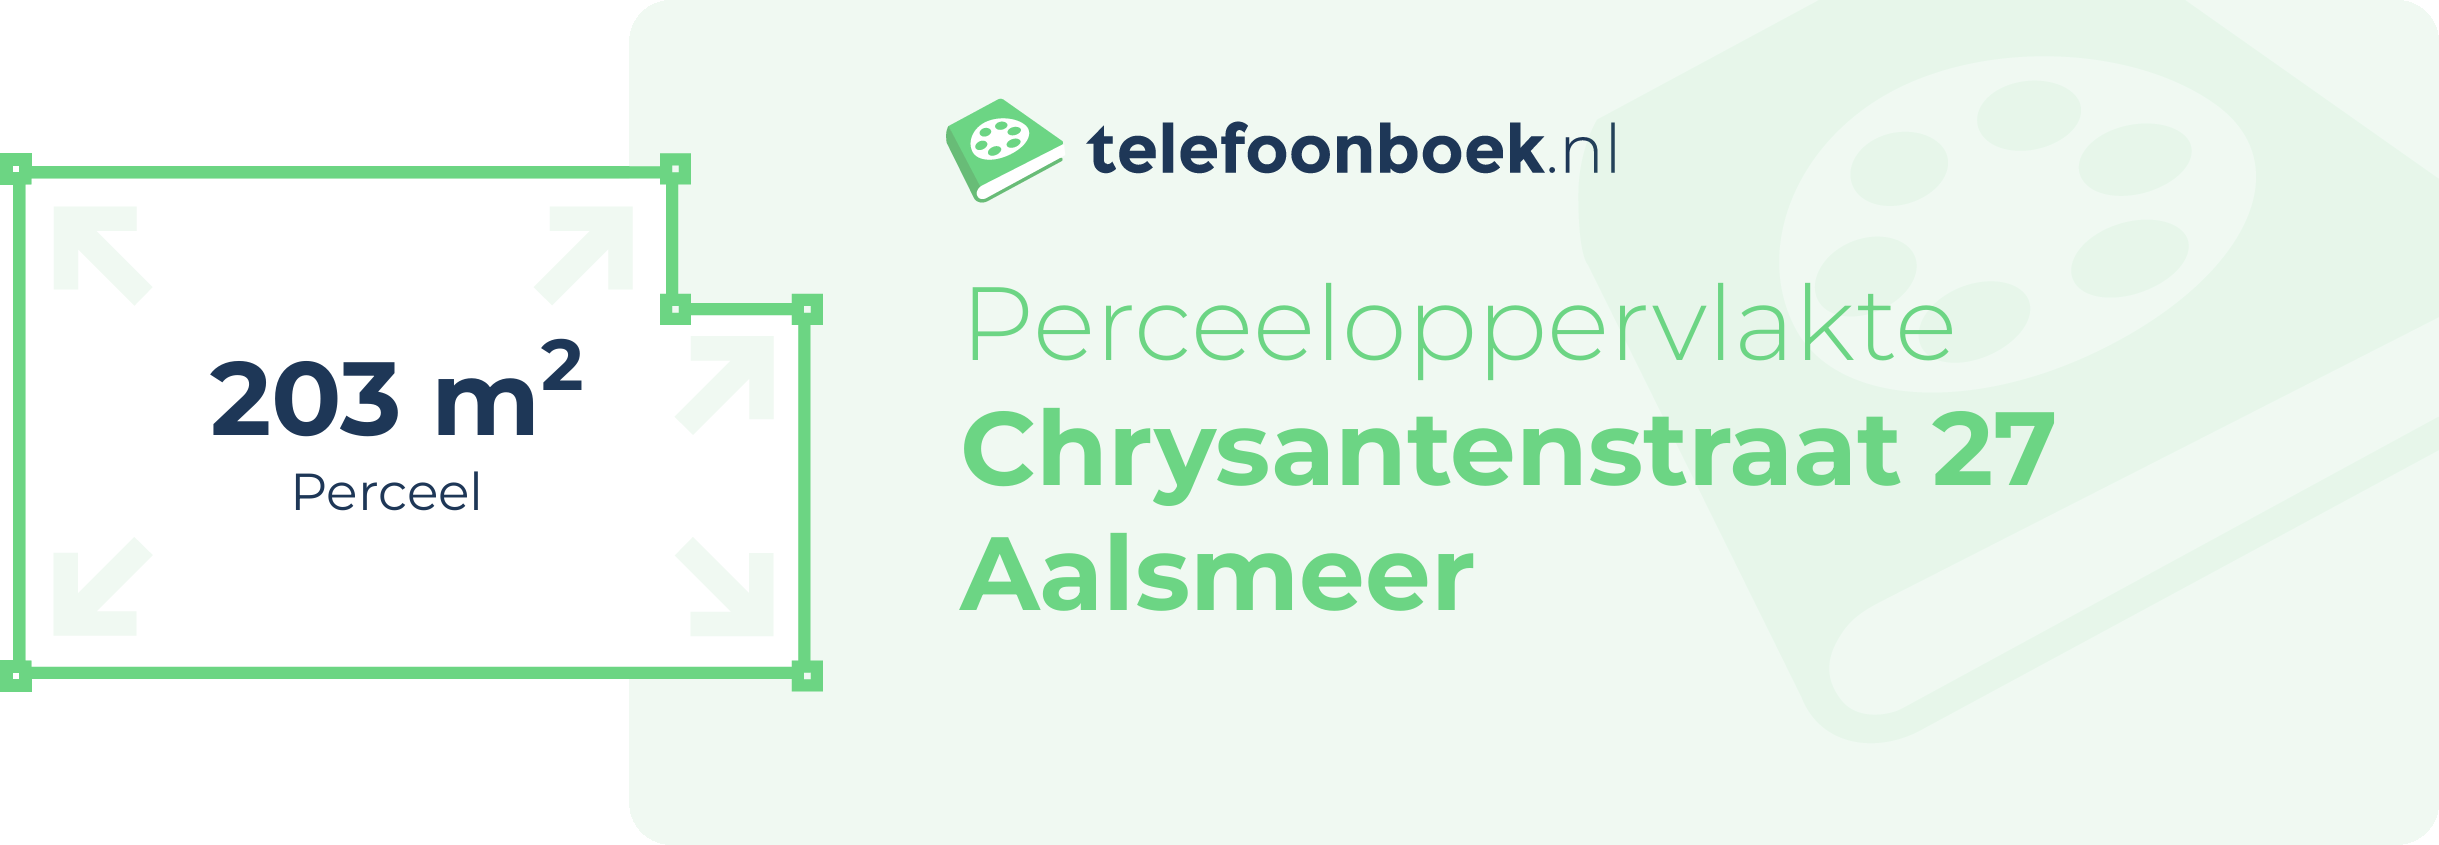 Perceeloppervlakte Chrysantenstraat 27 Aalsmeer